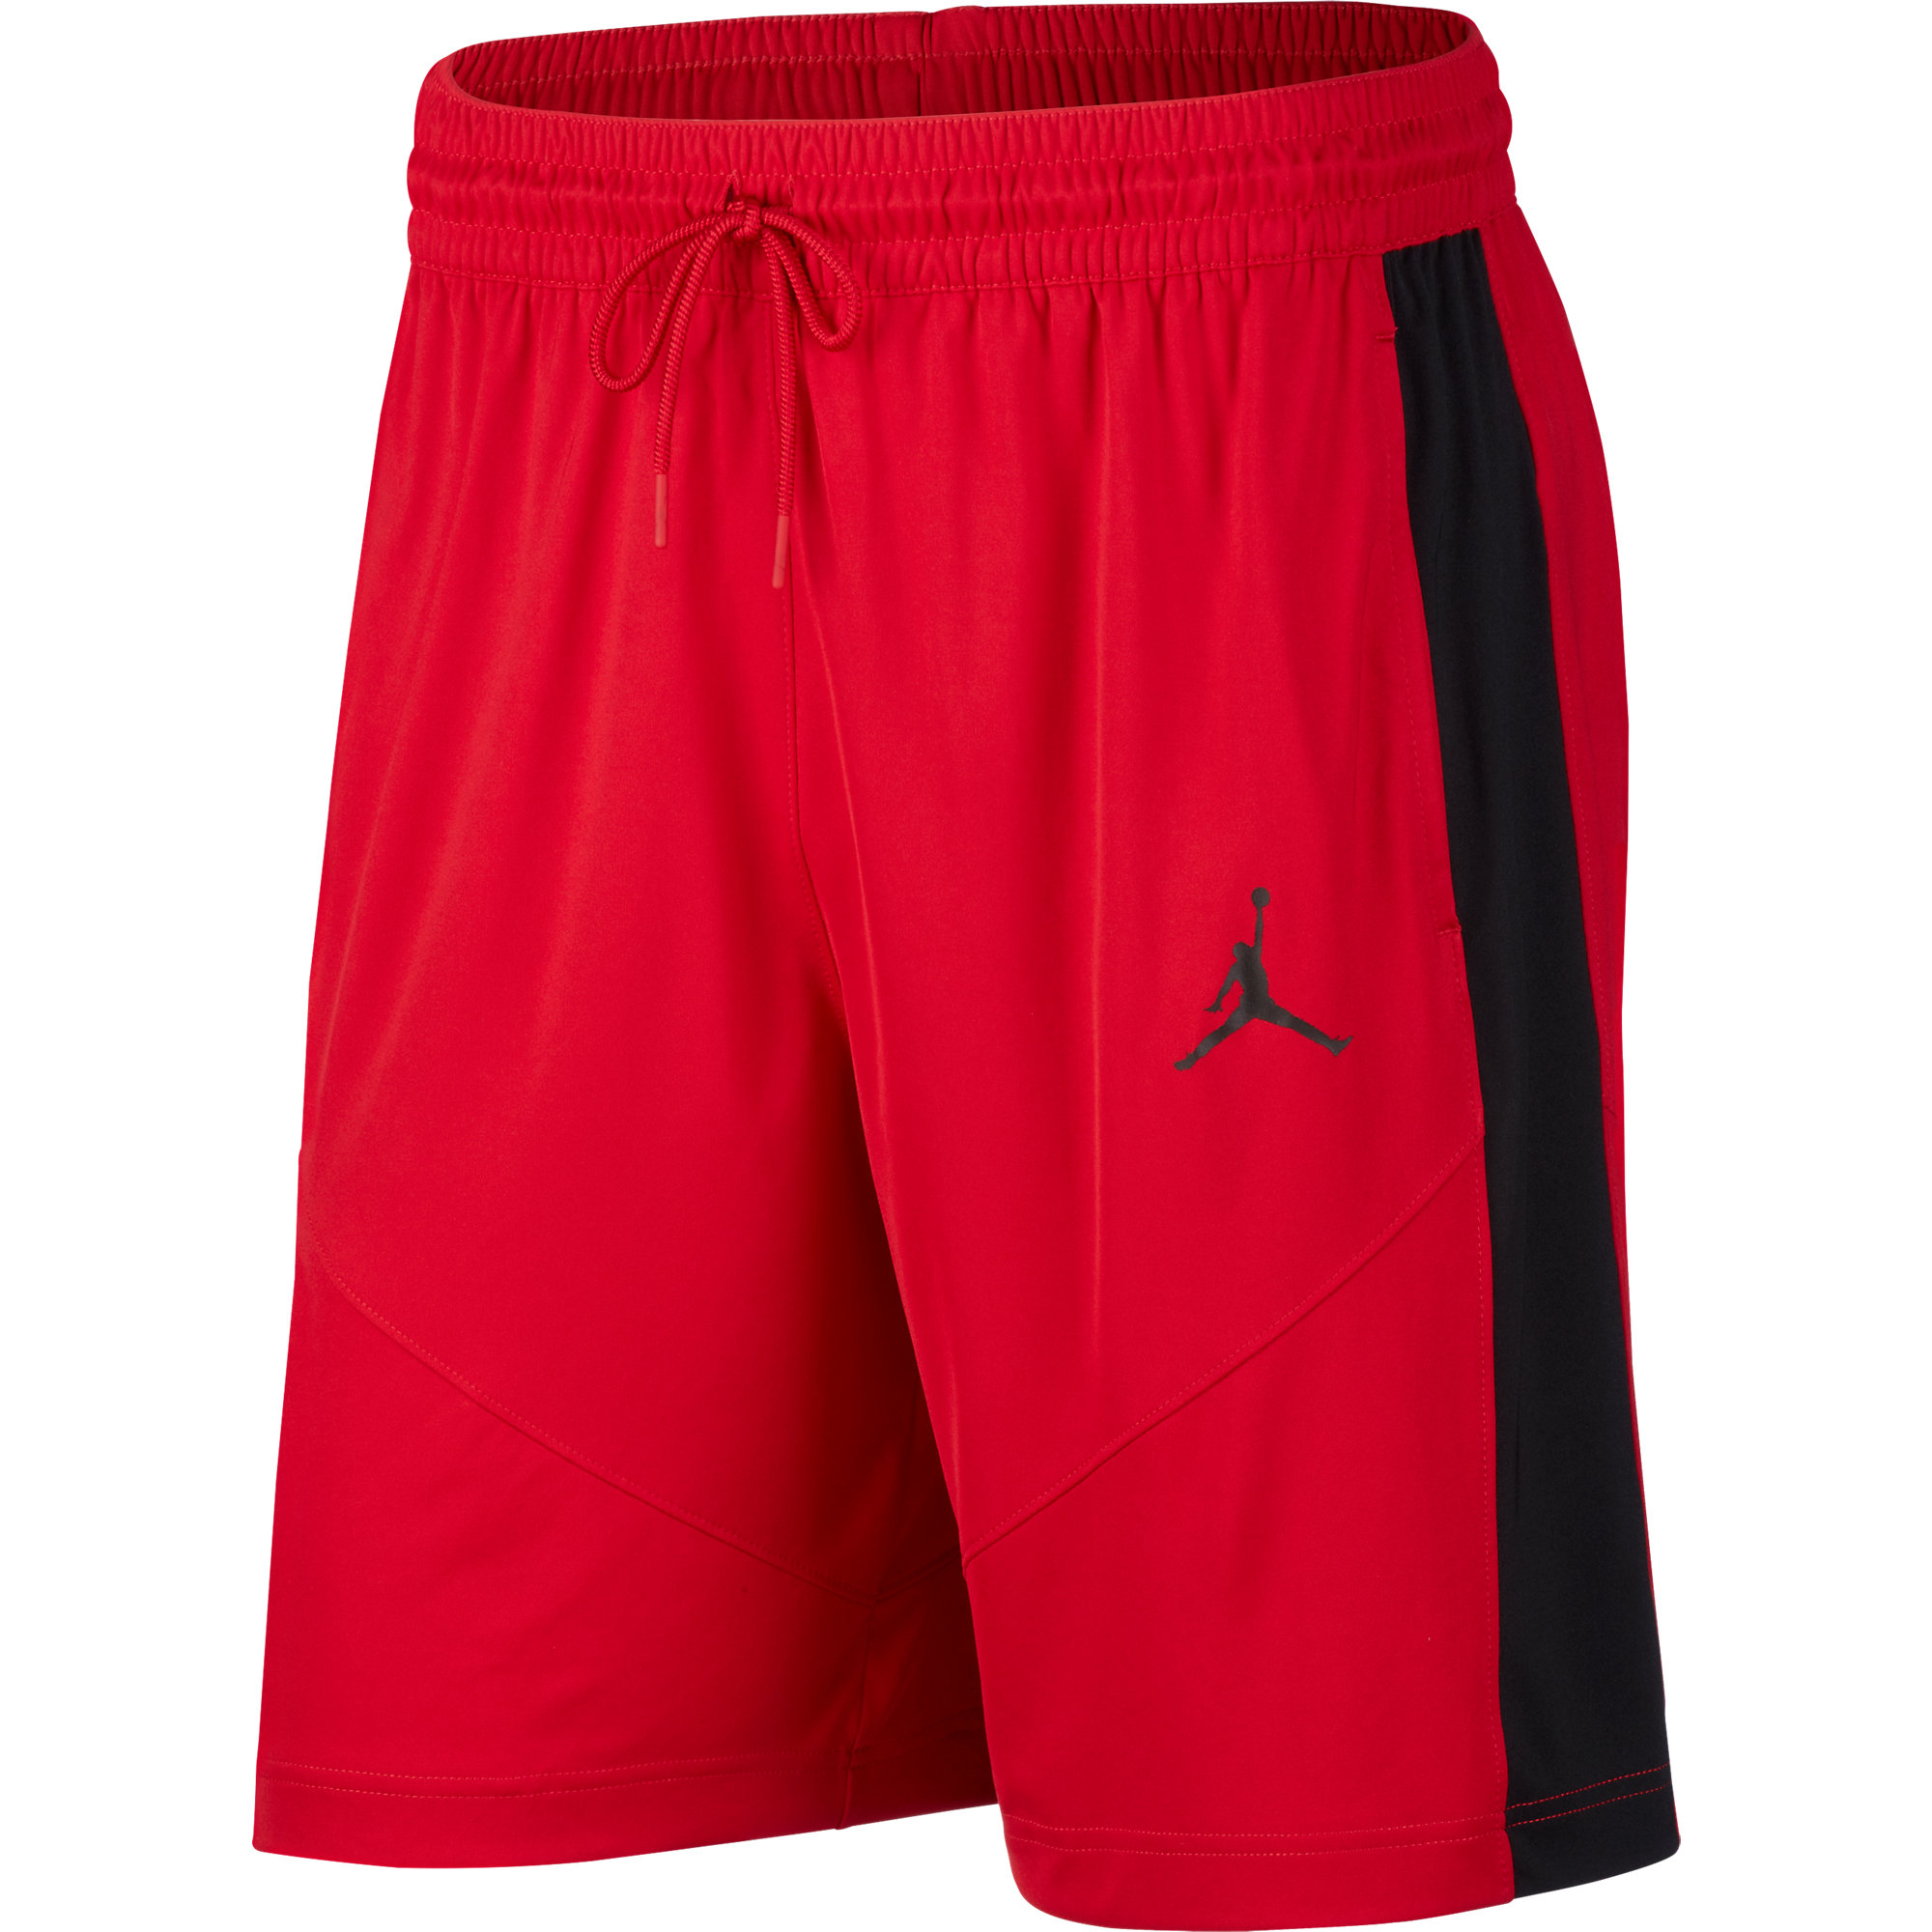 jumpman basketball shorts